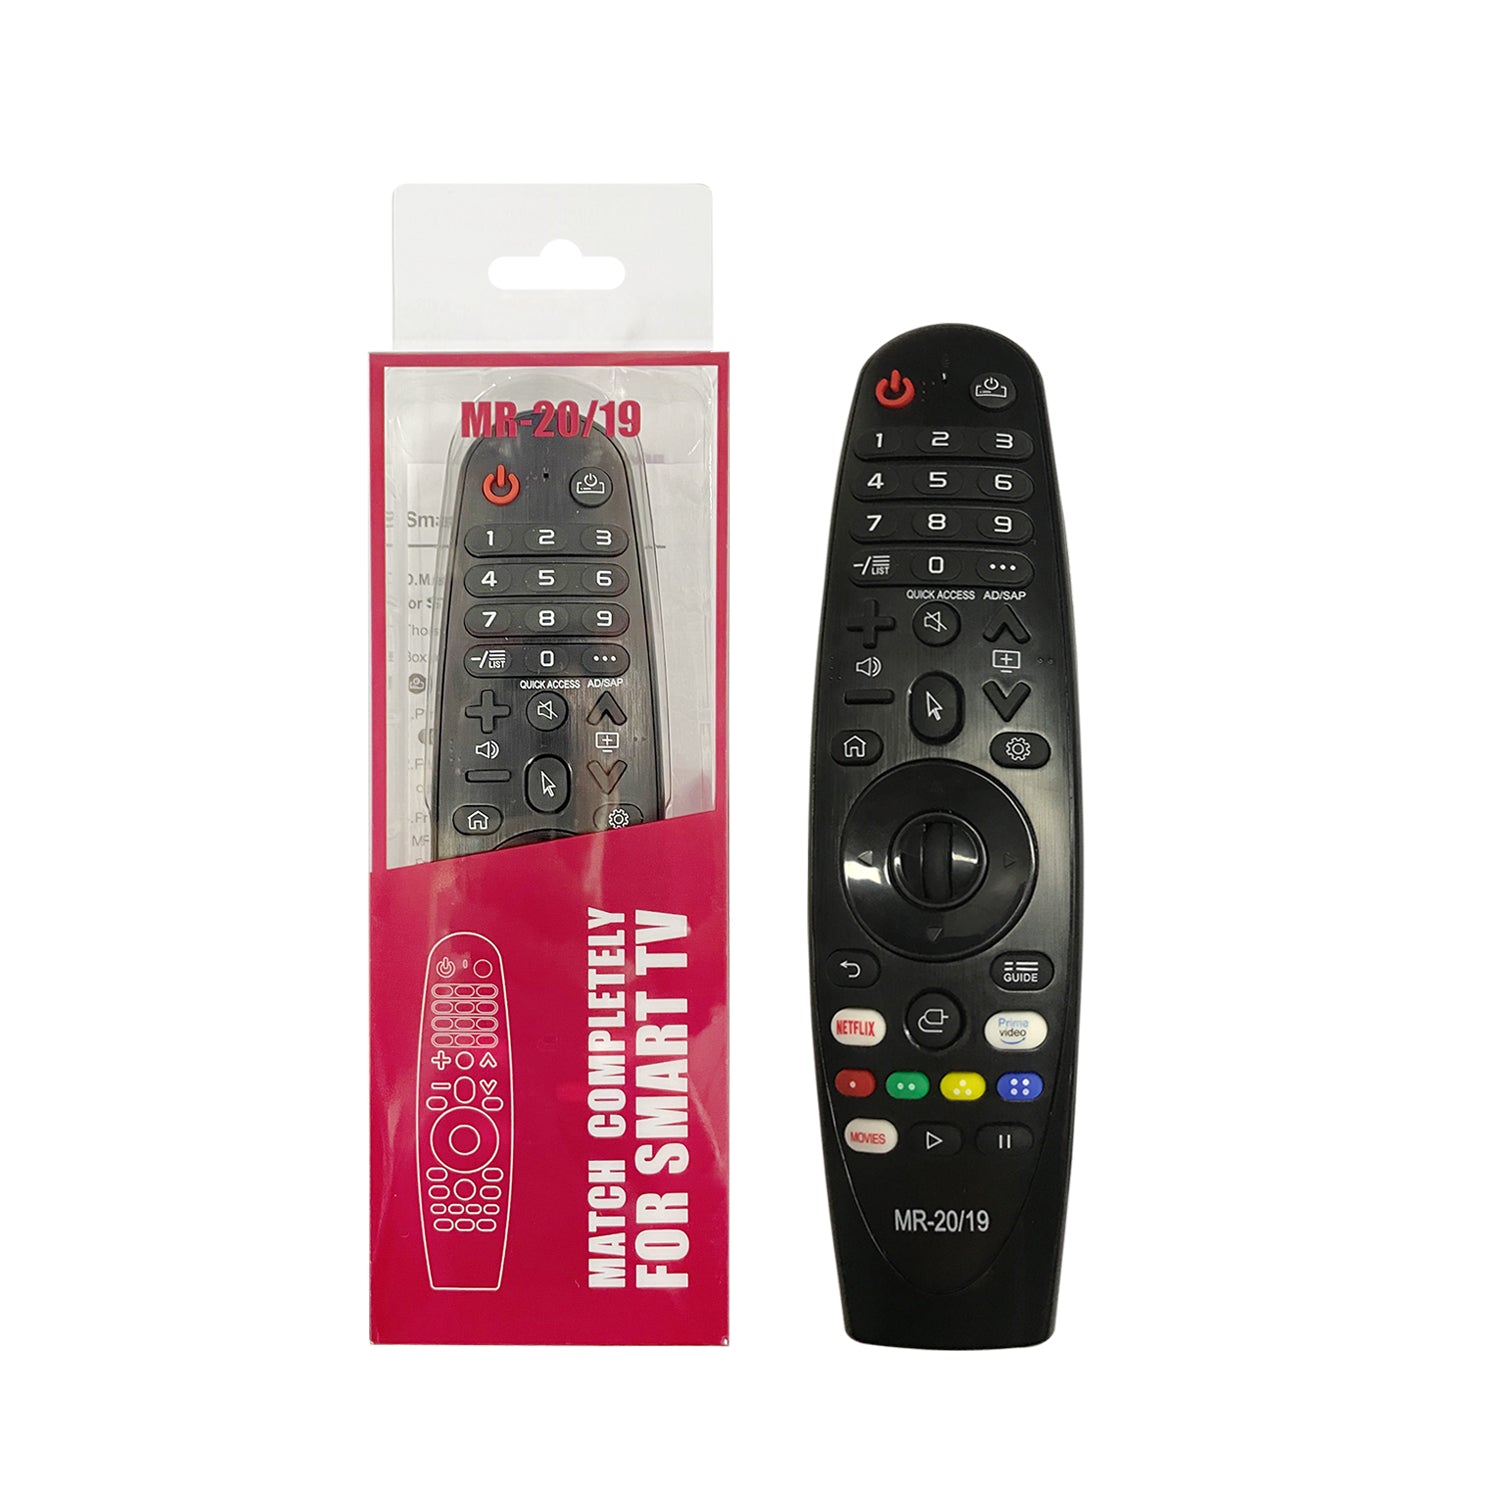 LG Magic Remote Control 2020 model LG TV compatible - AN-MR20GA